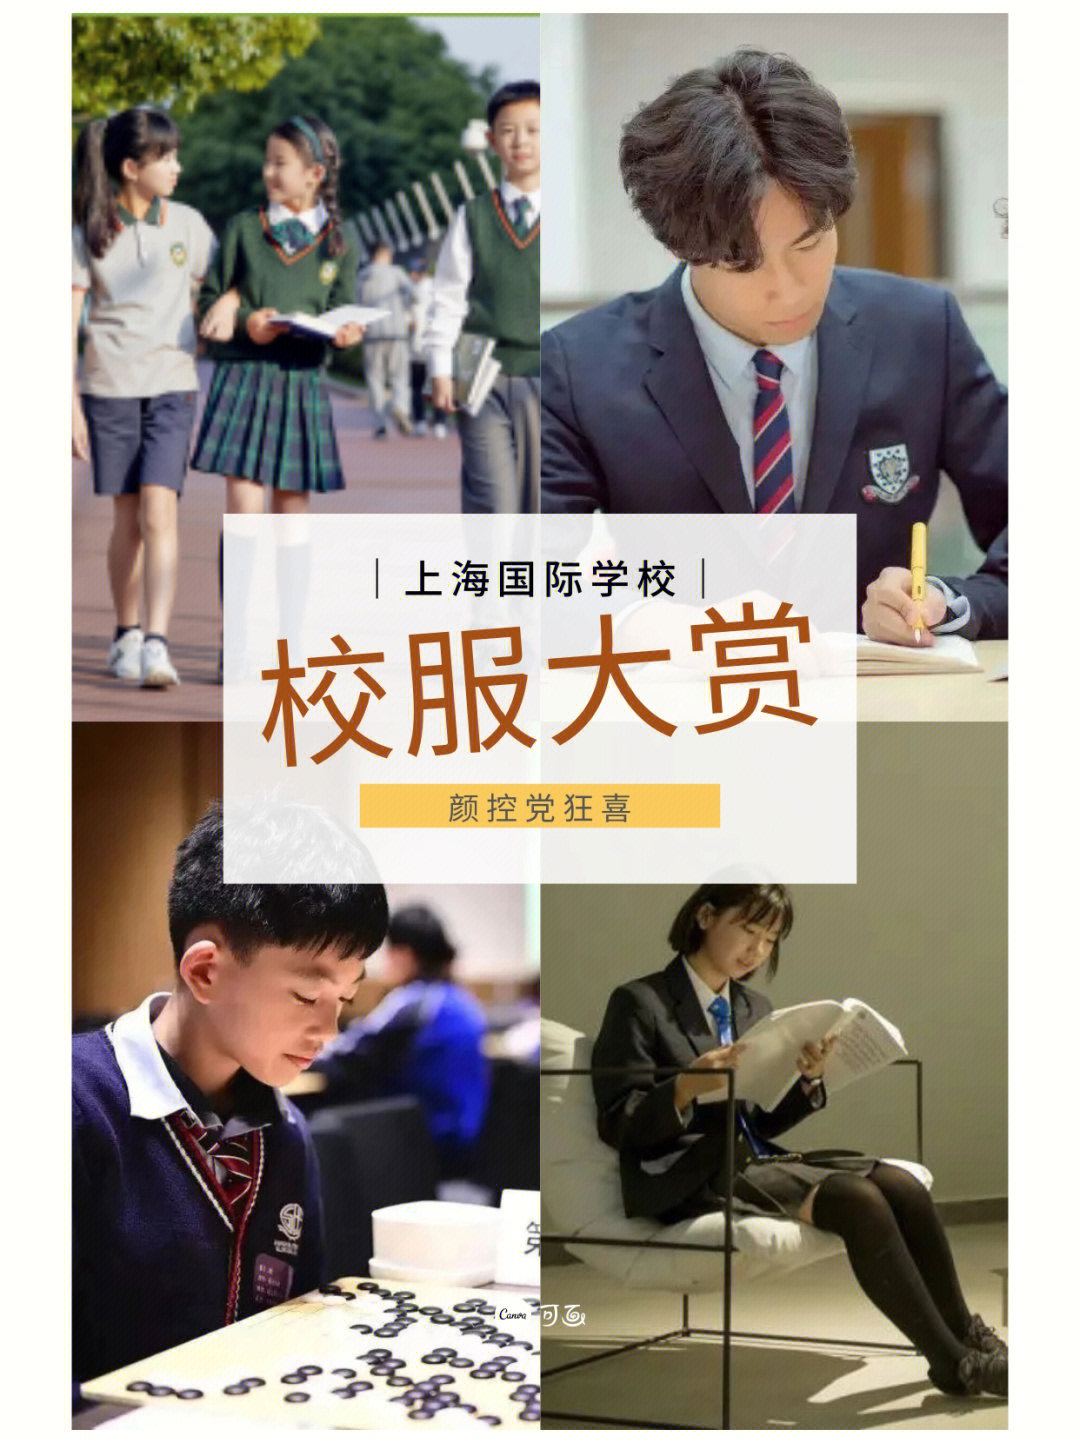 上海高中校服图鉴图片